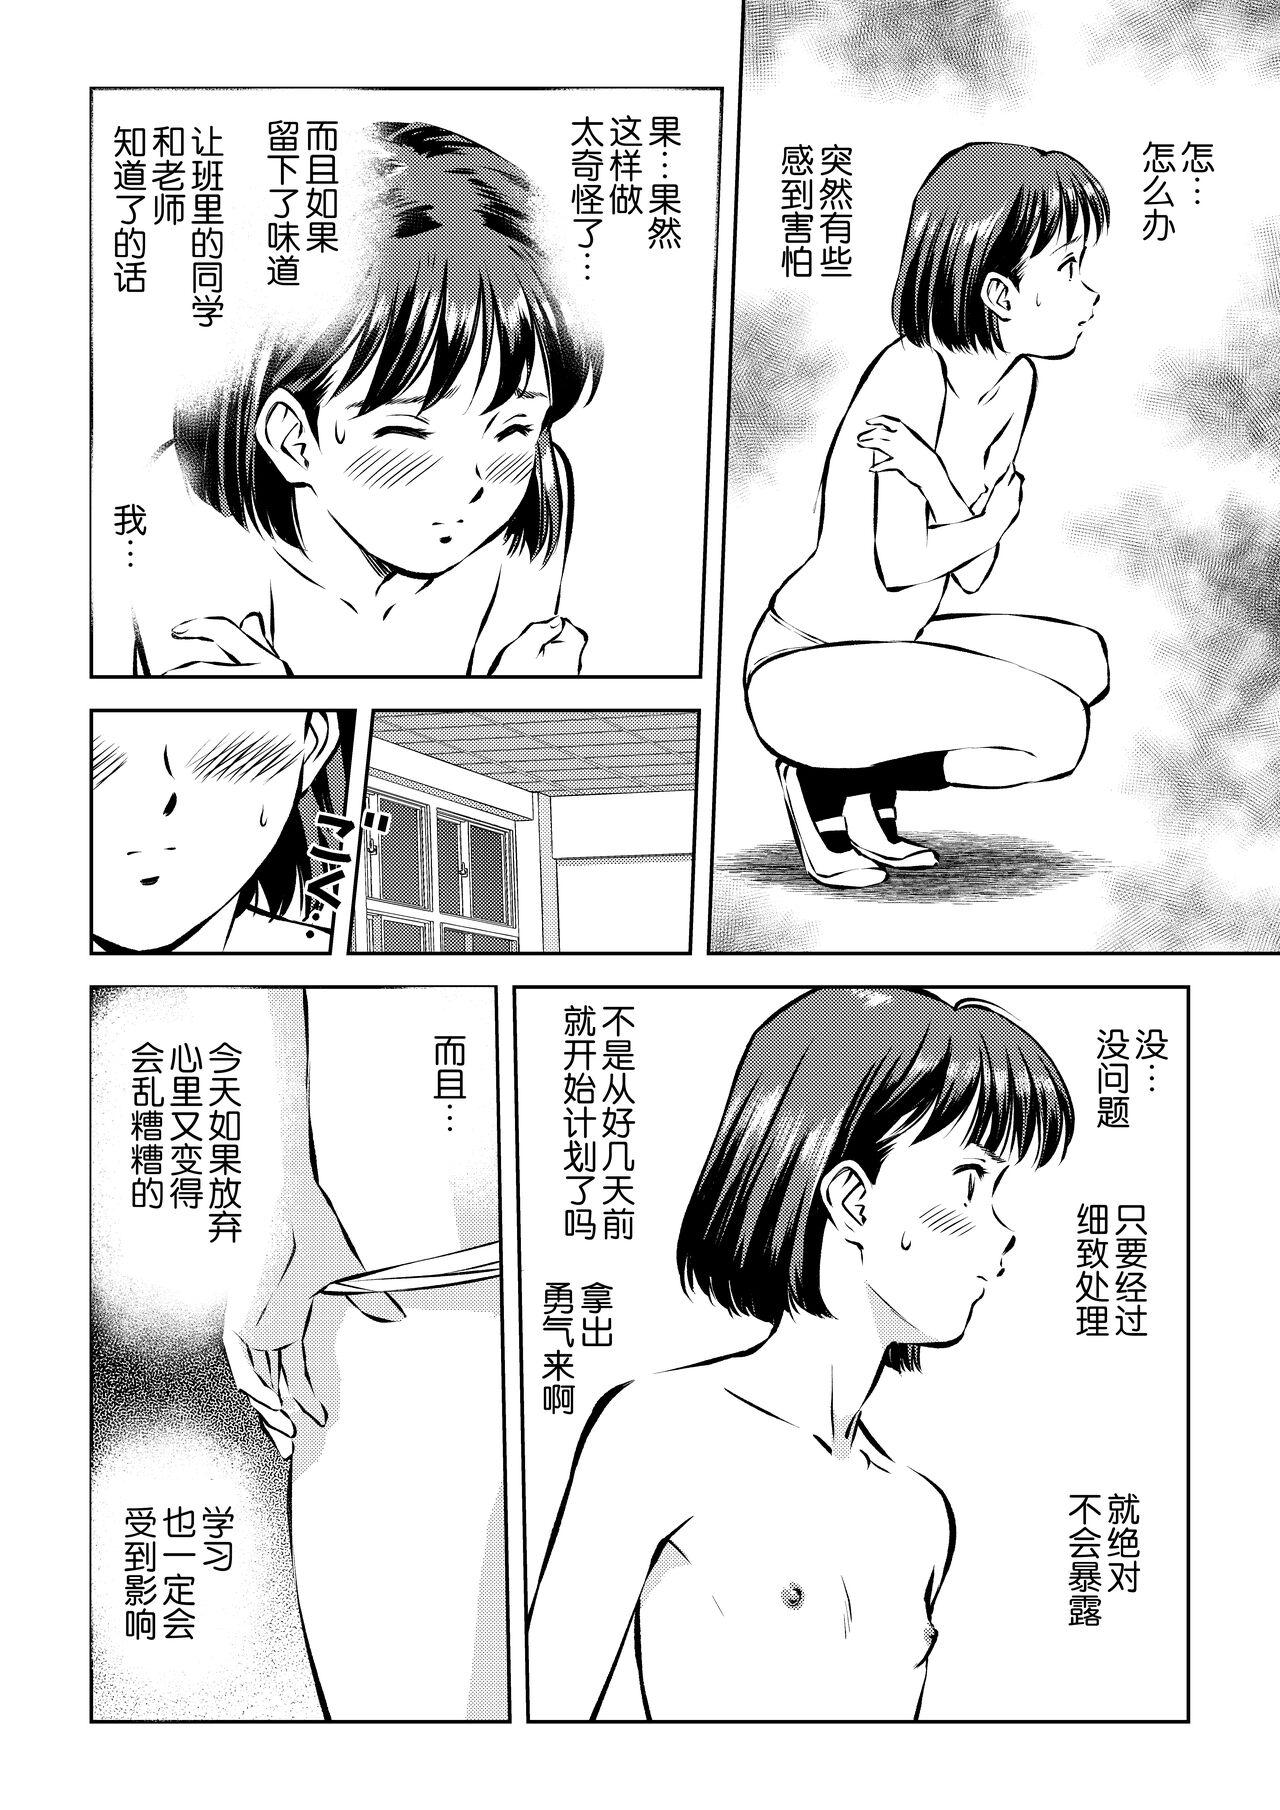 Cojiendo Hougago no Kyoushitsu de Porn - Page 4